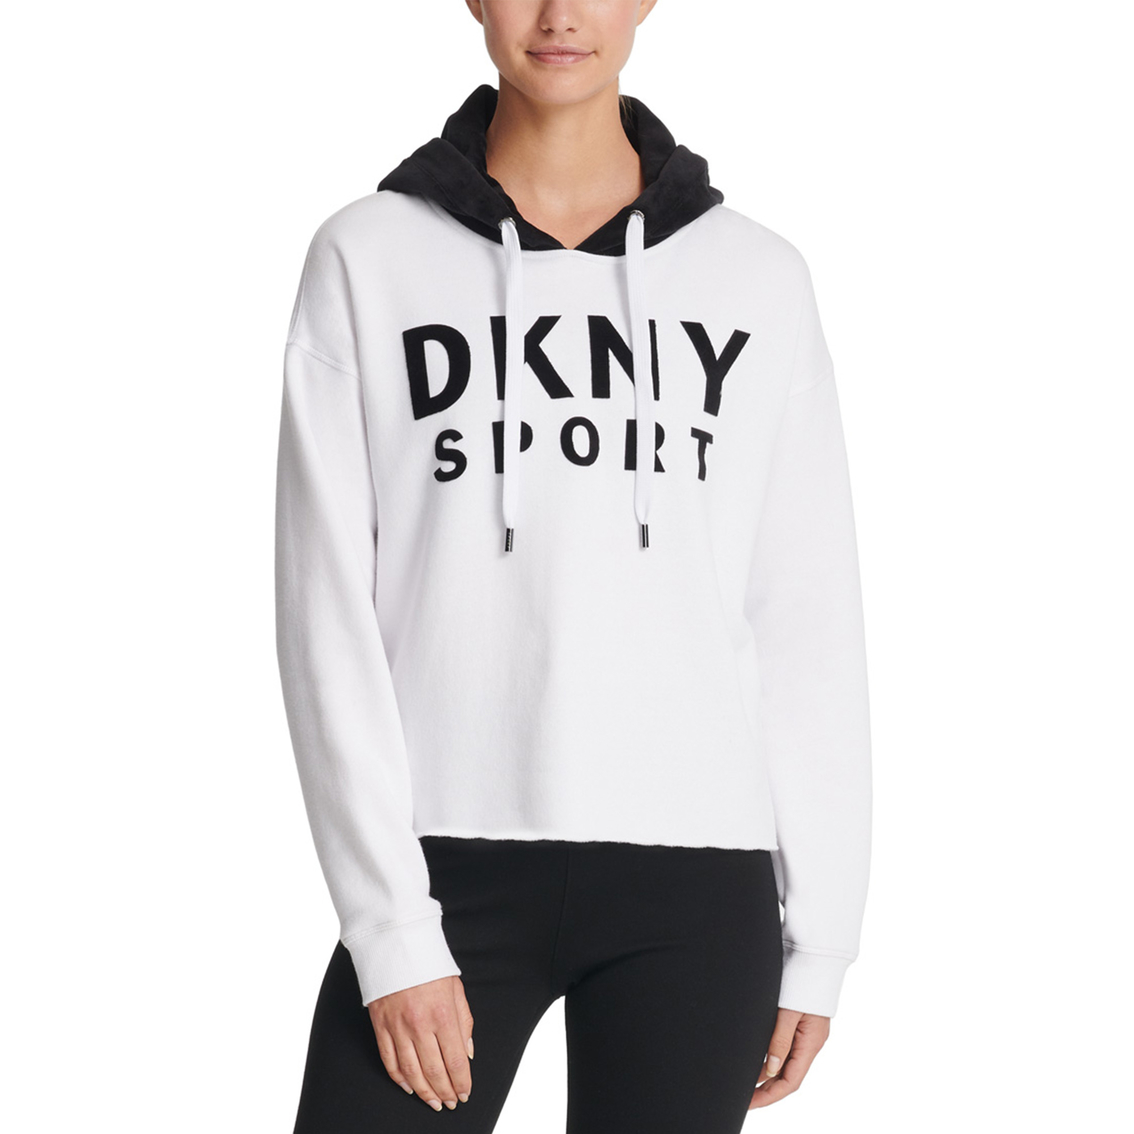 Dkny Sport Velour Logo Hooded Pullover